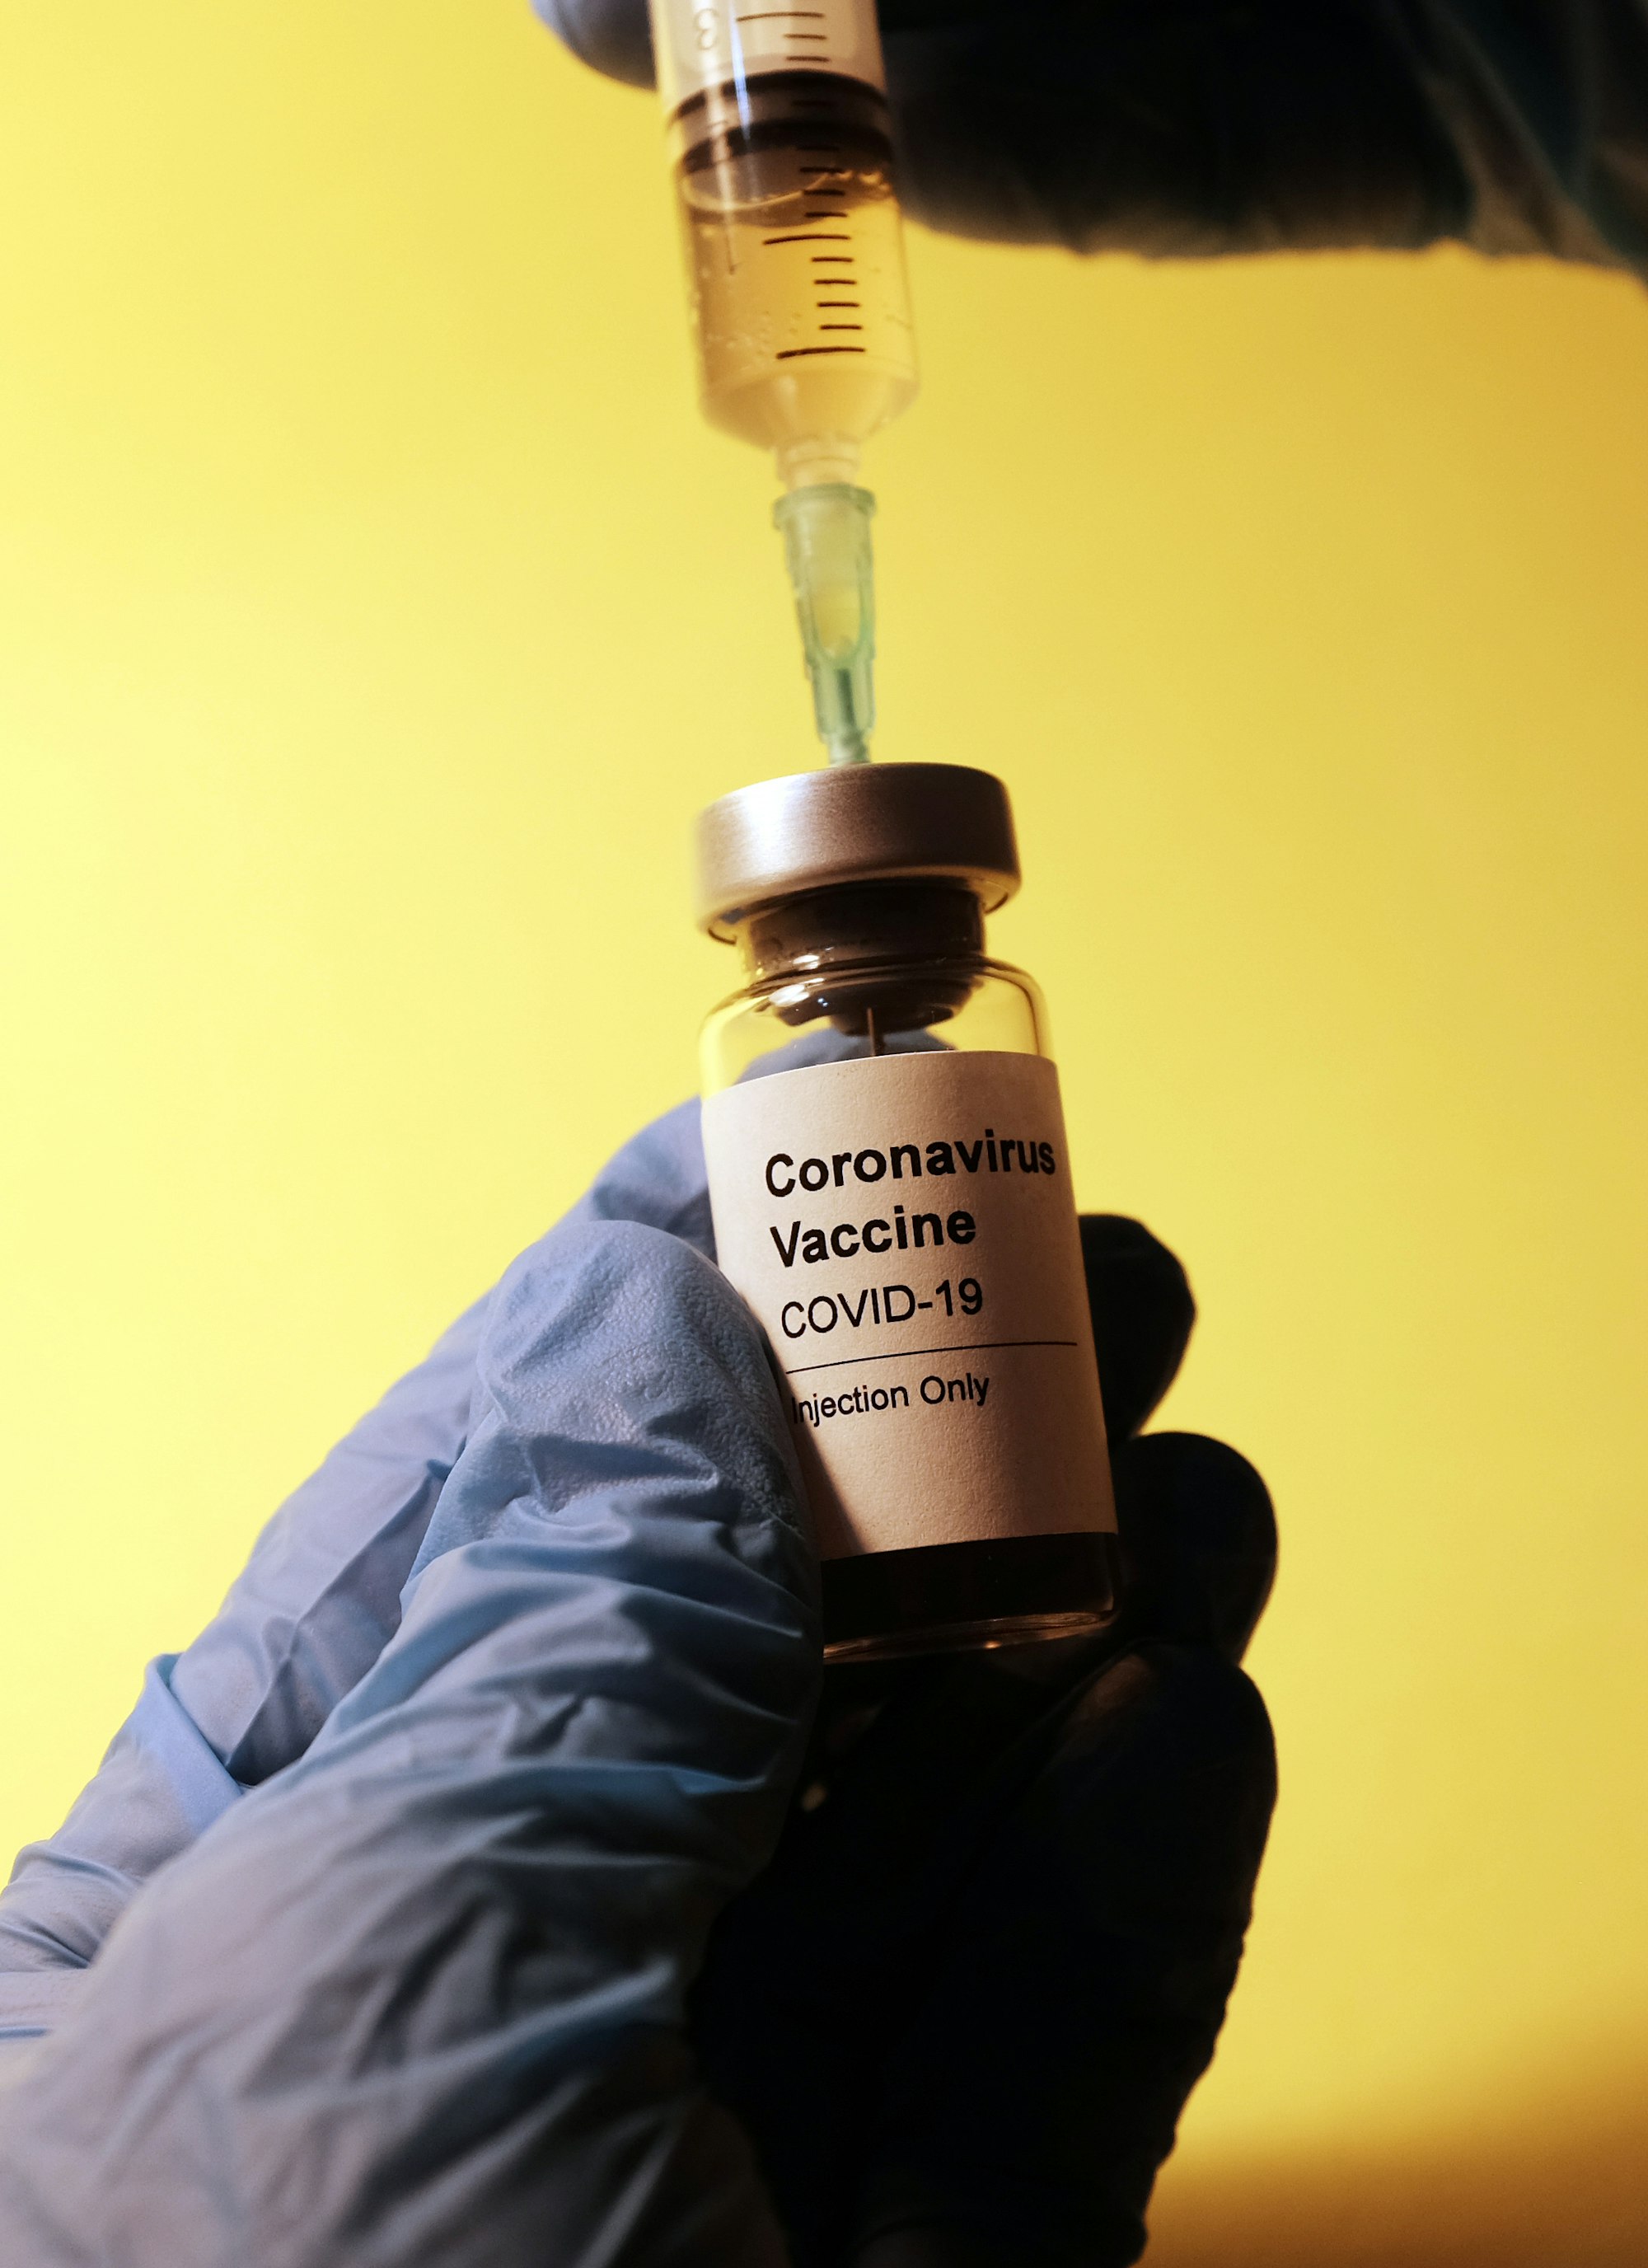 COVID-19 vaccine lands in Kenya